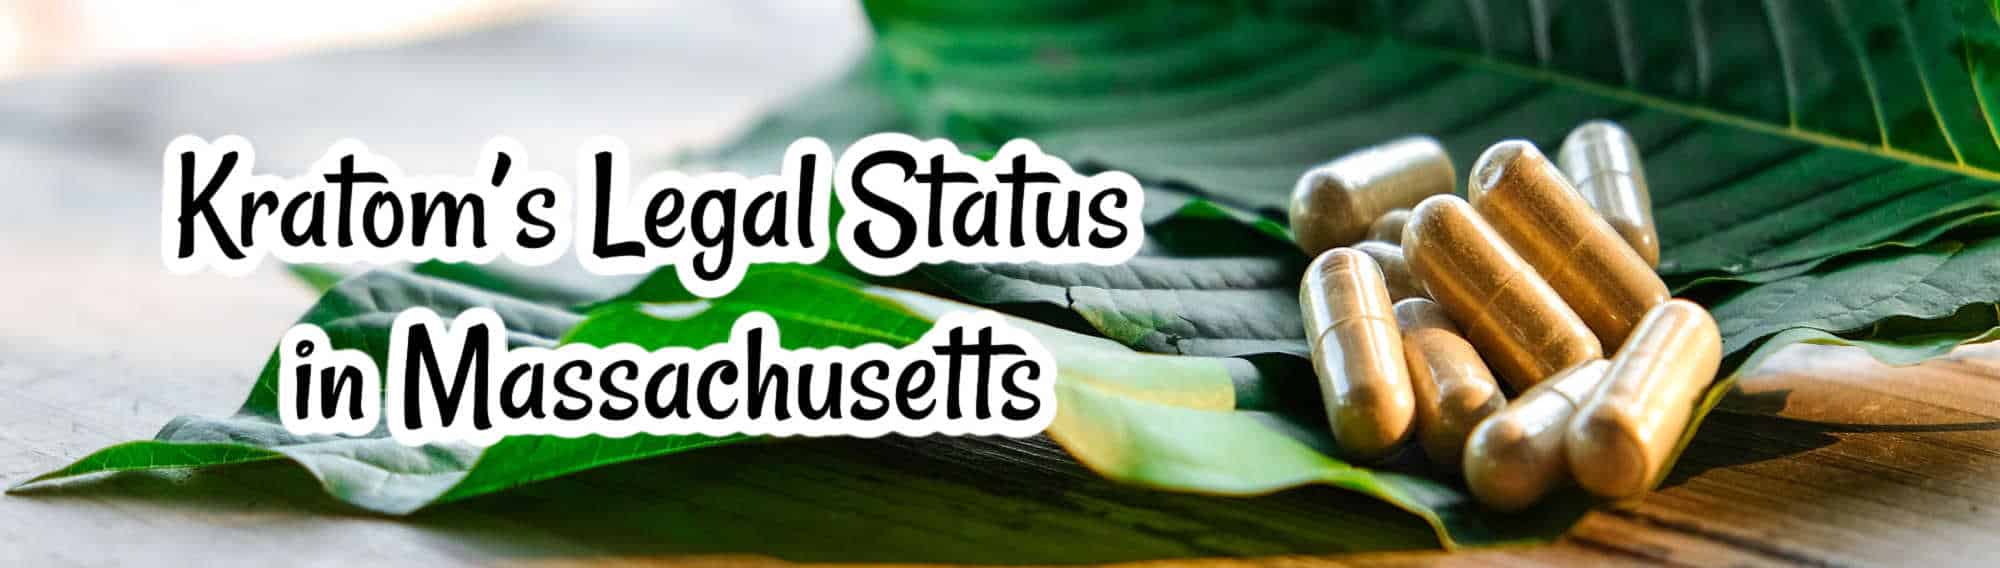 image of kratoms legal status in massachusetts